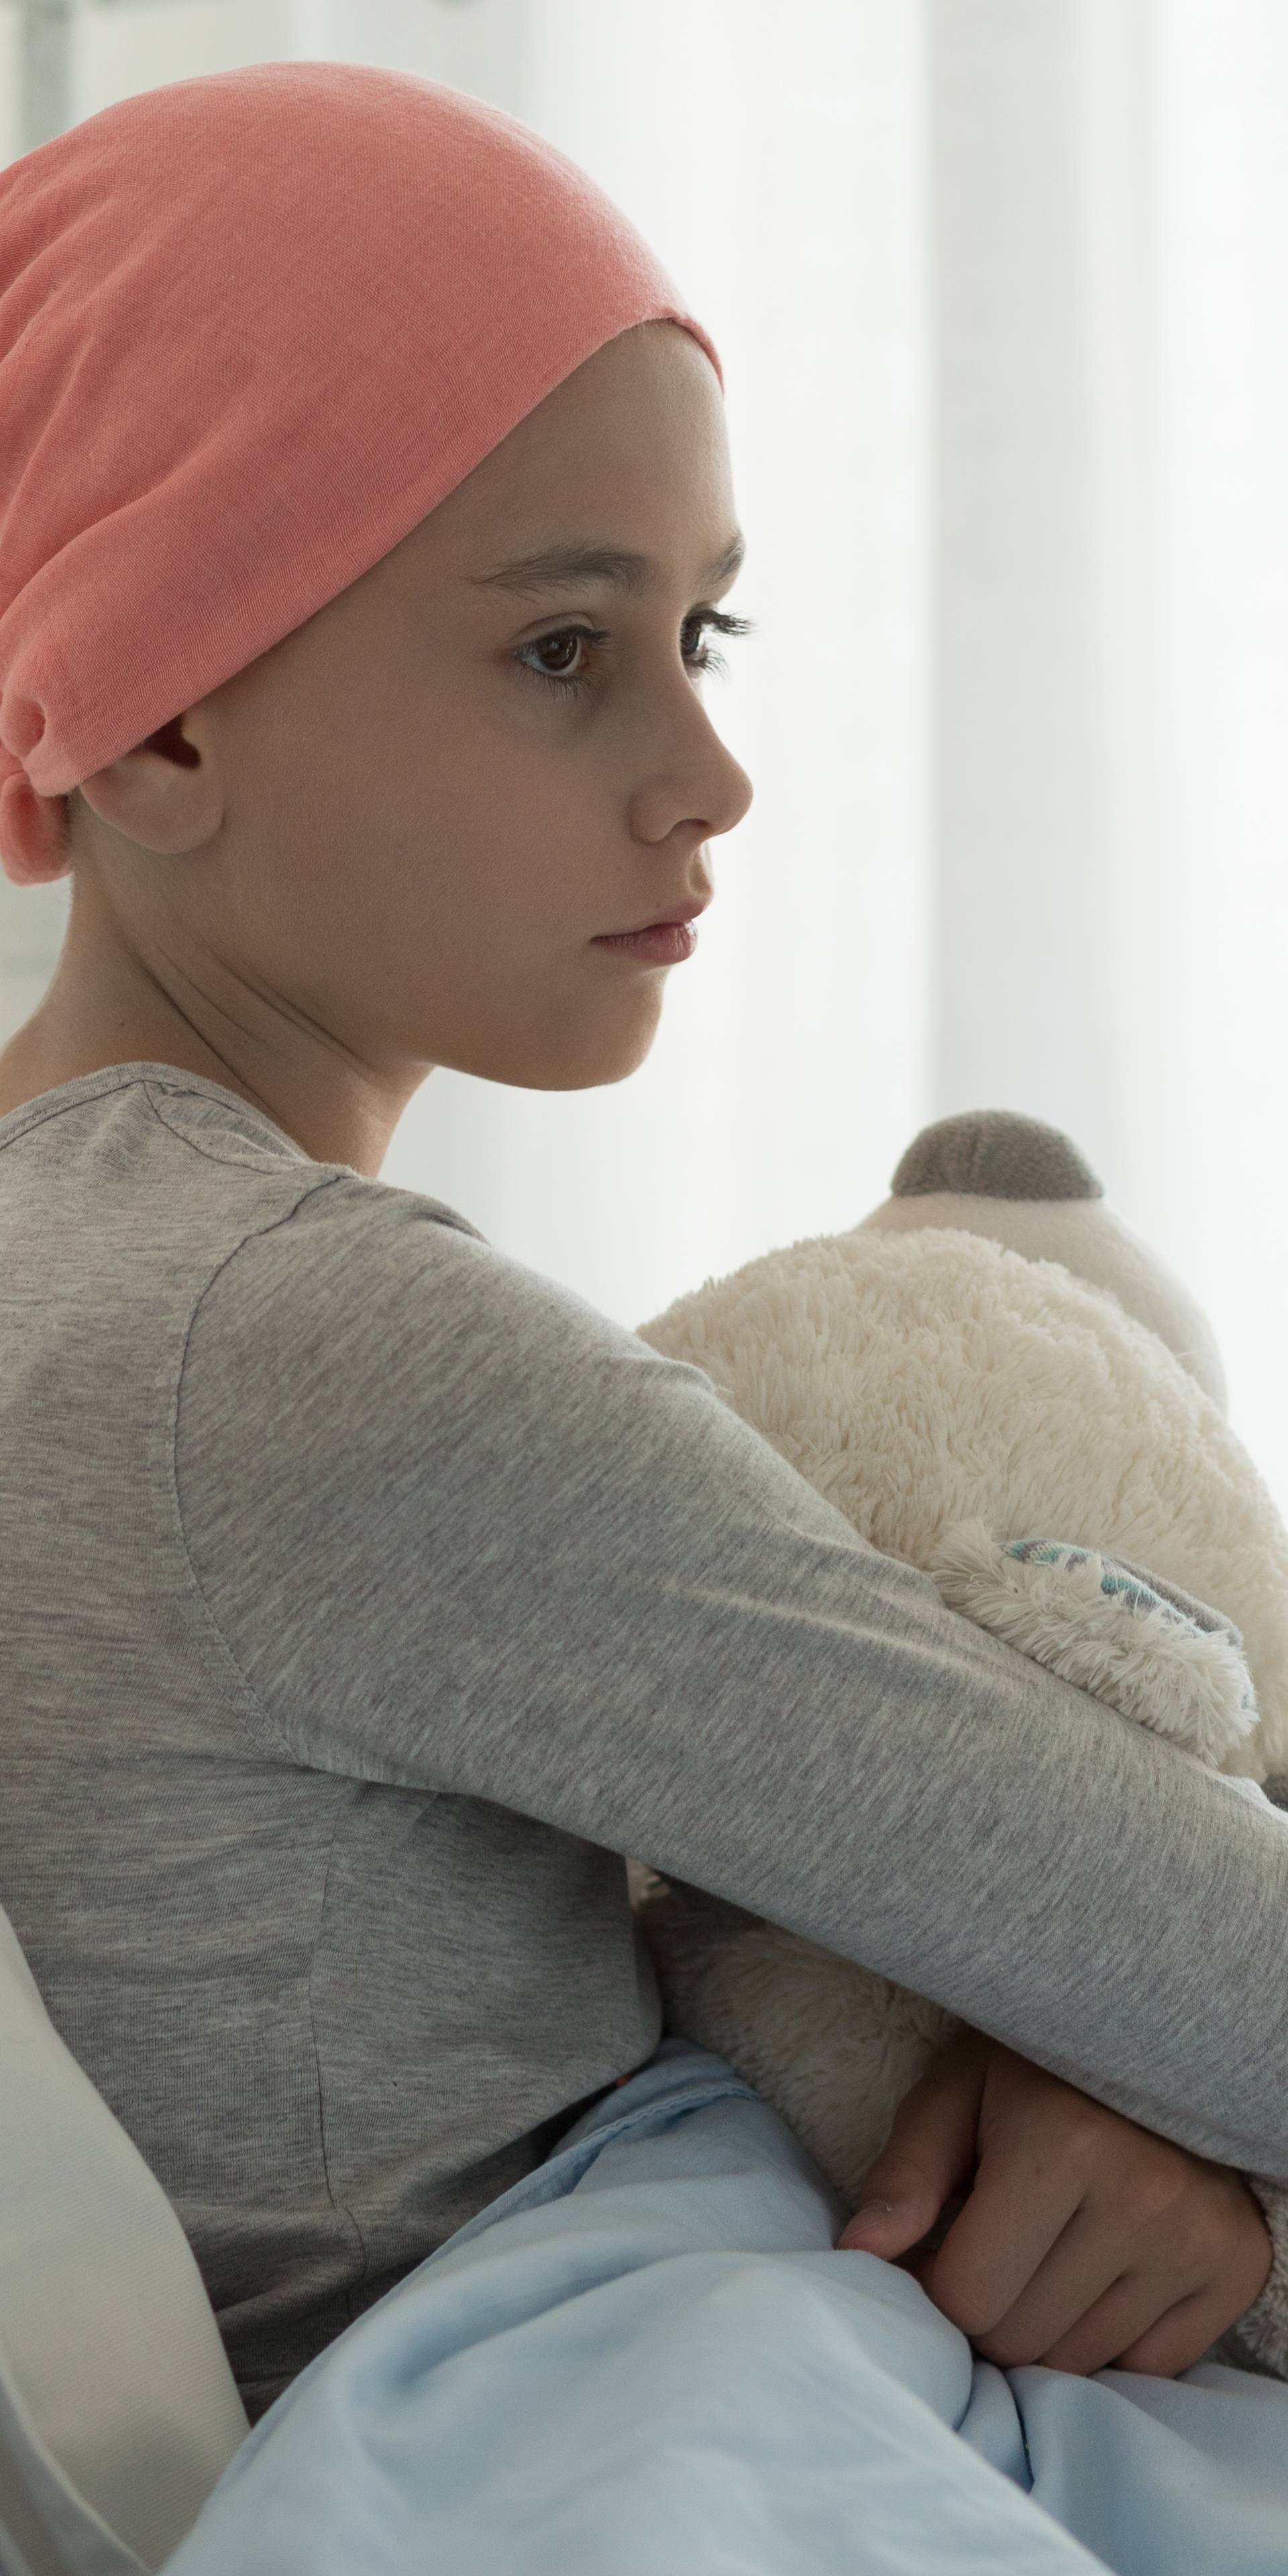 11 karcinoma je u porastu kod djece, mladih i mlađih odraslih